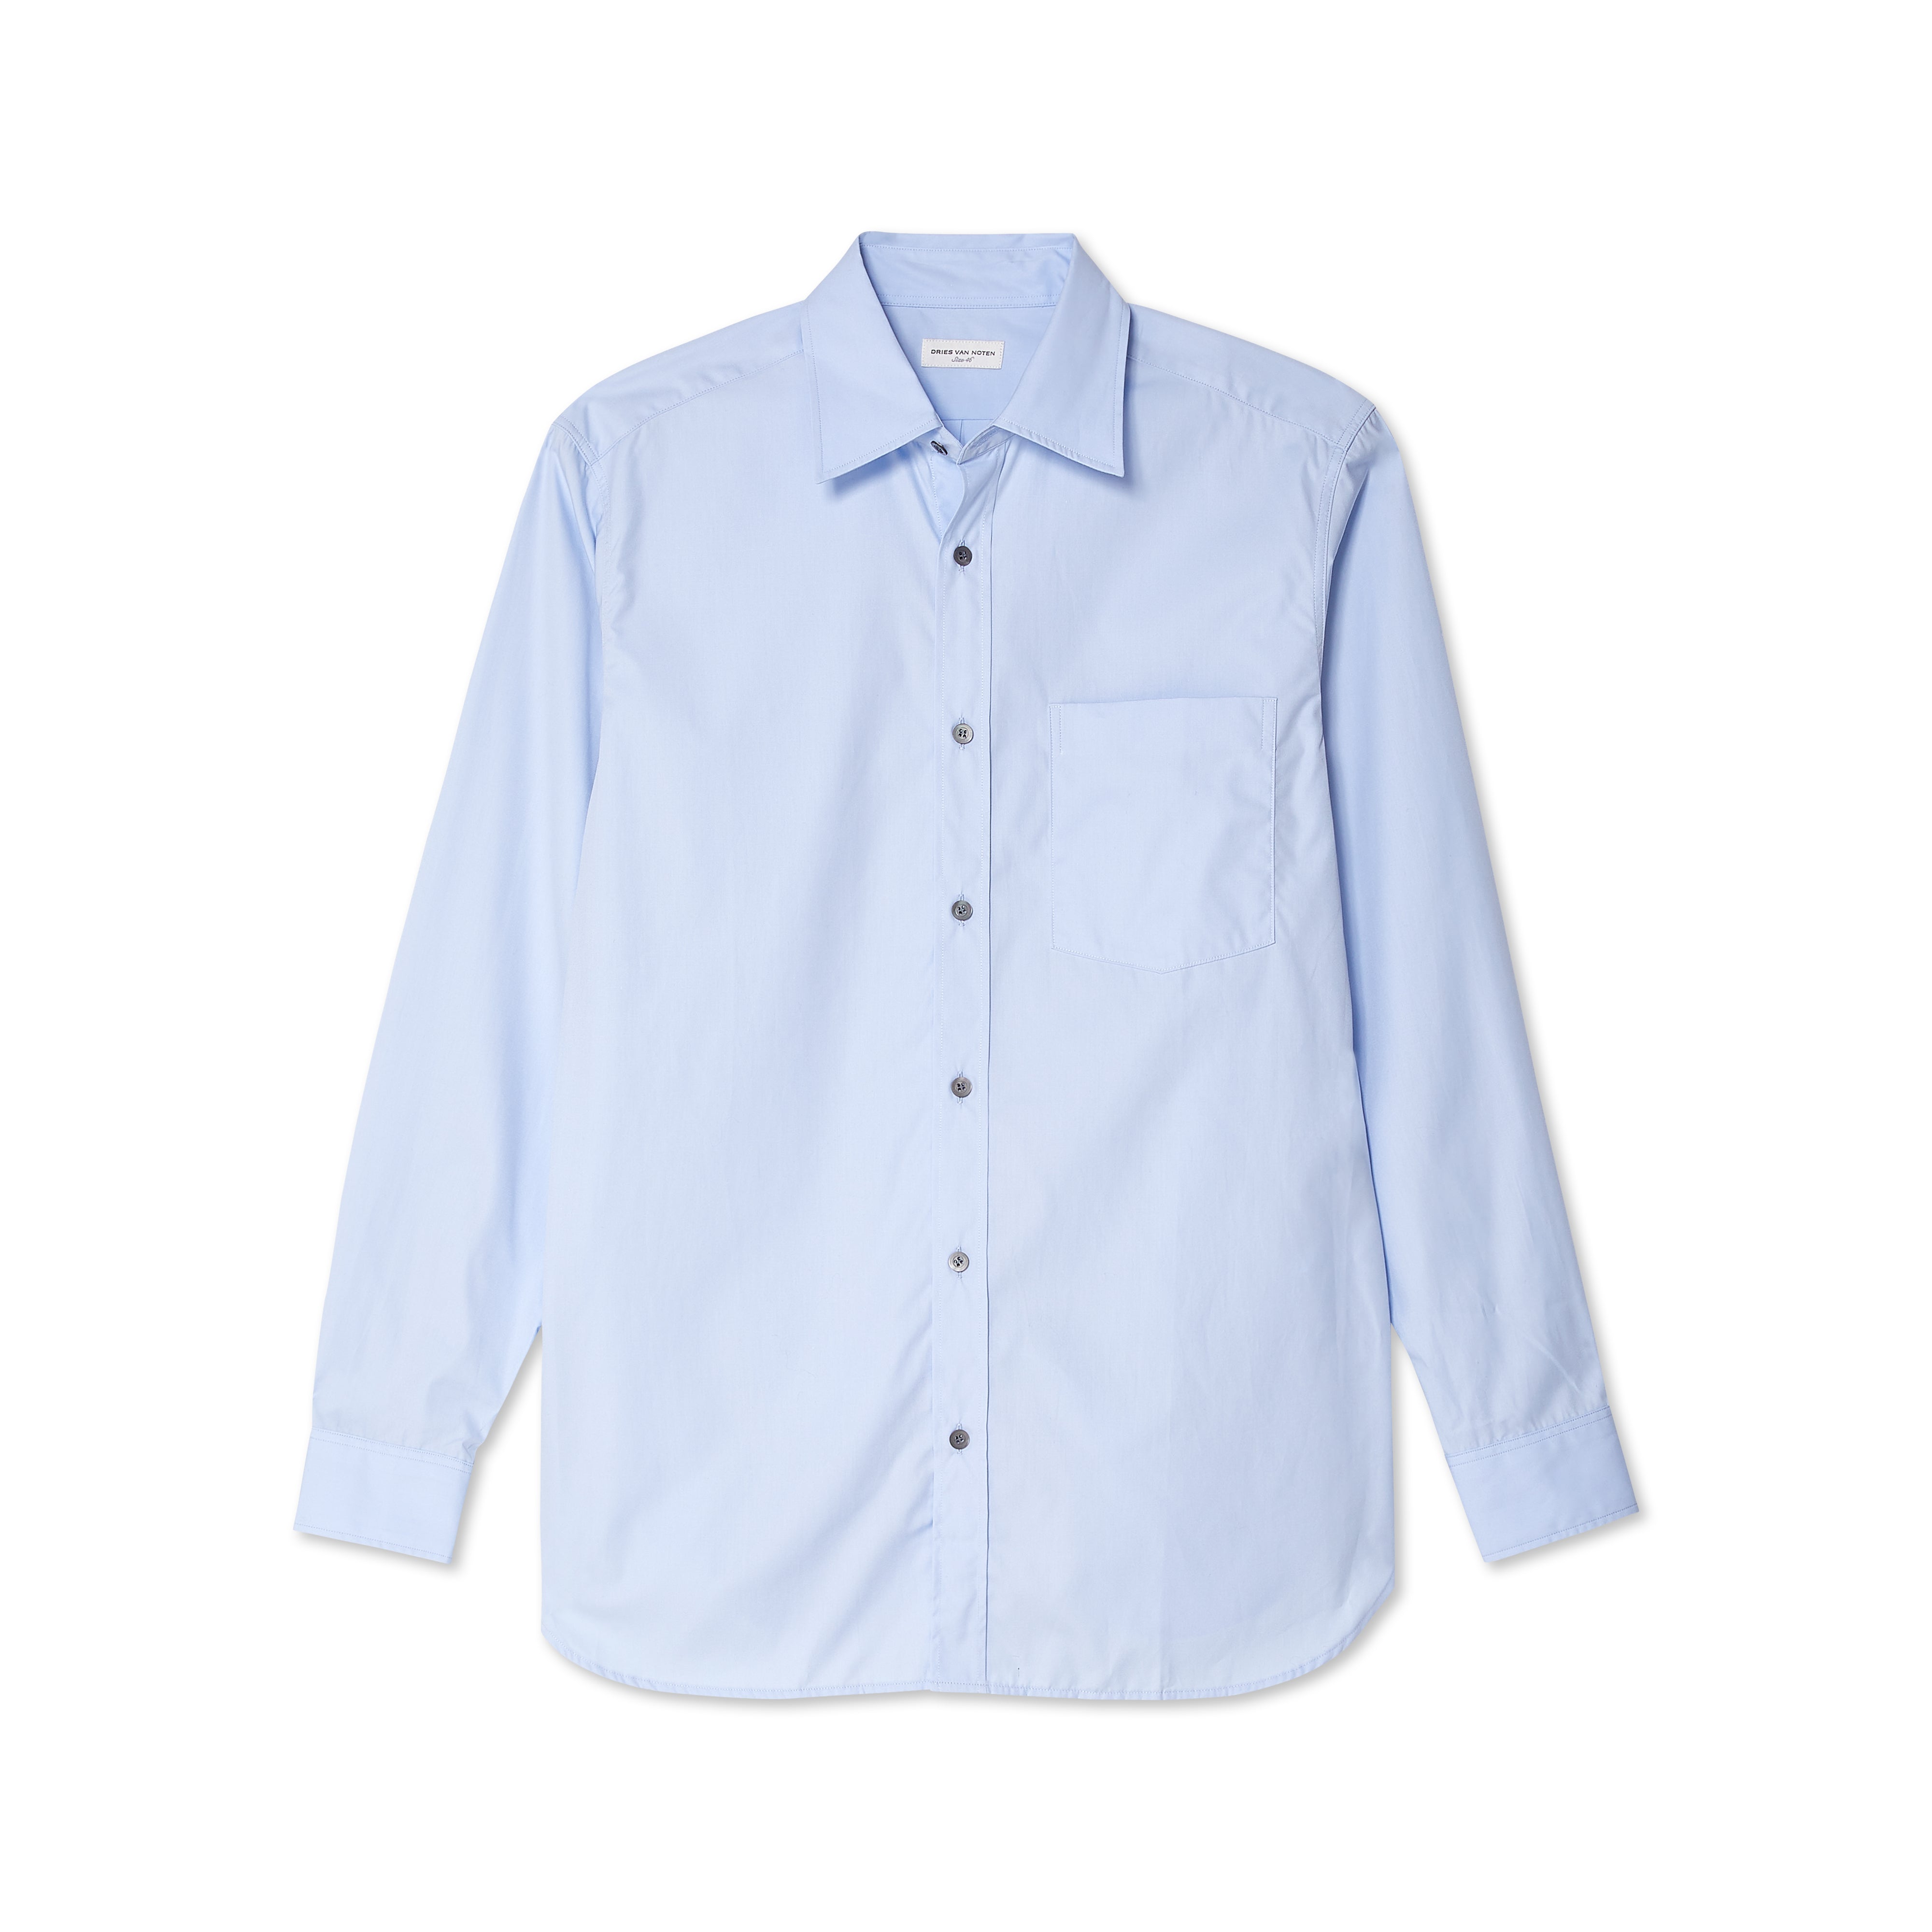 Dries Van Noten - Men's Shirt - (Light Blue)